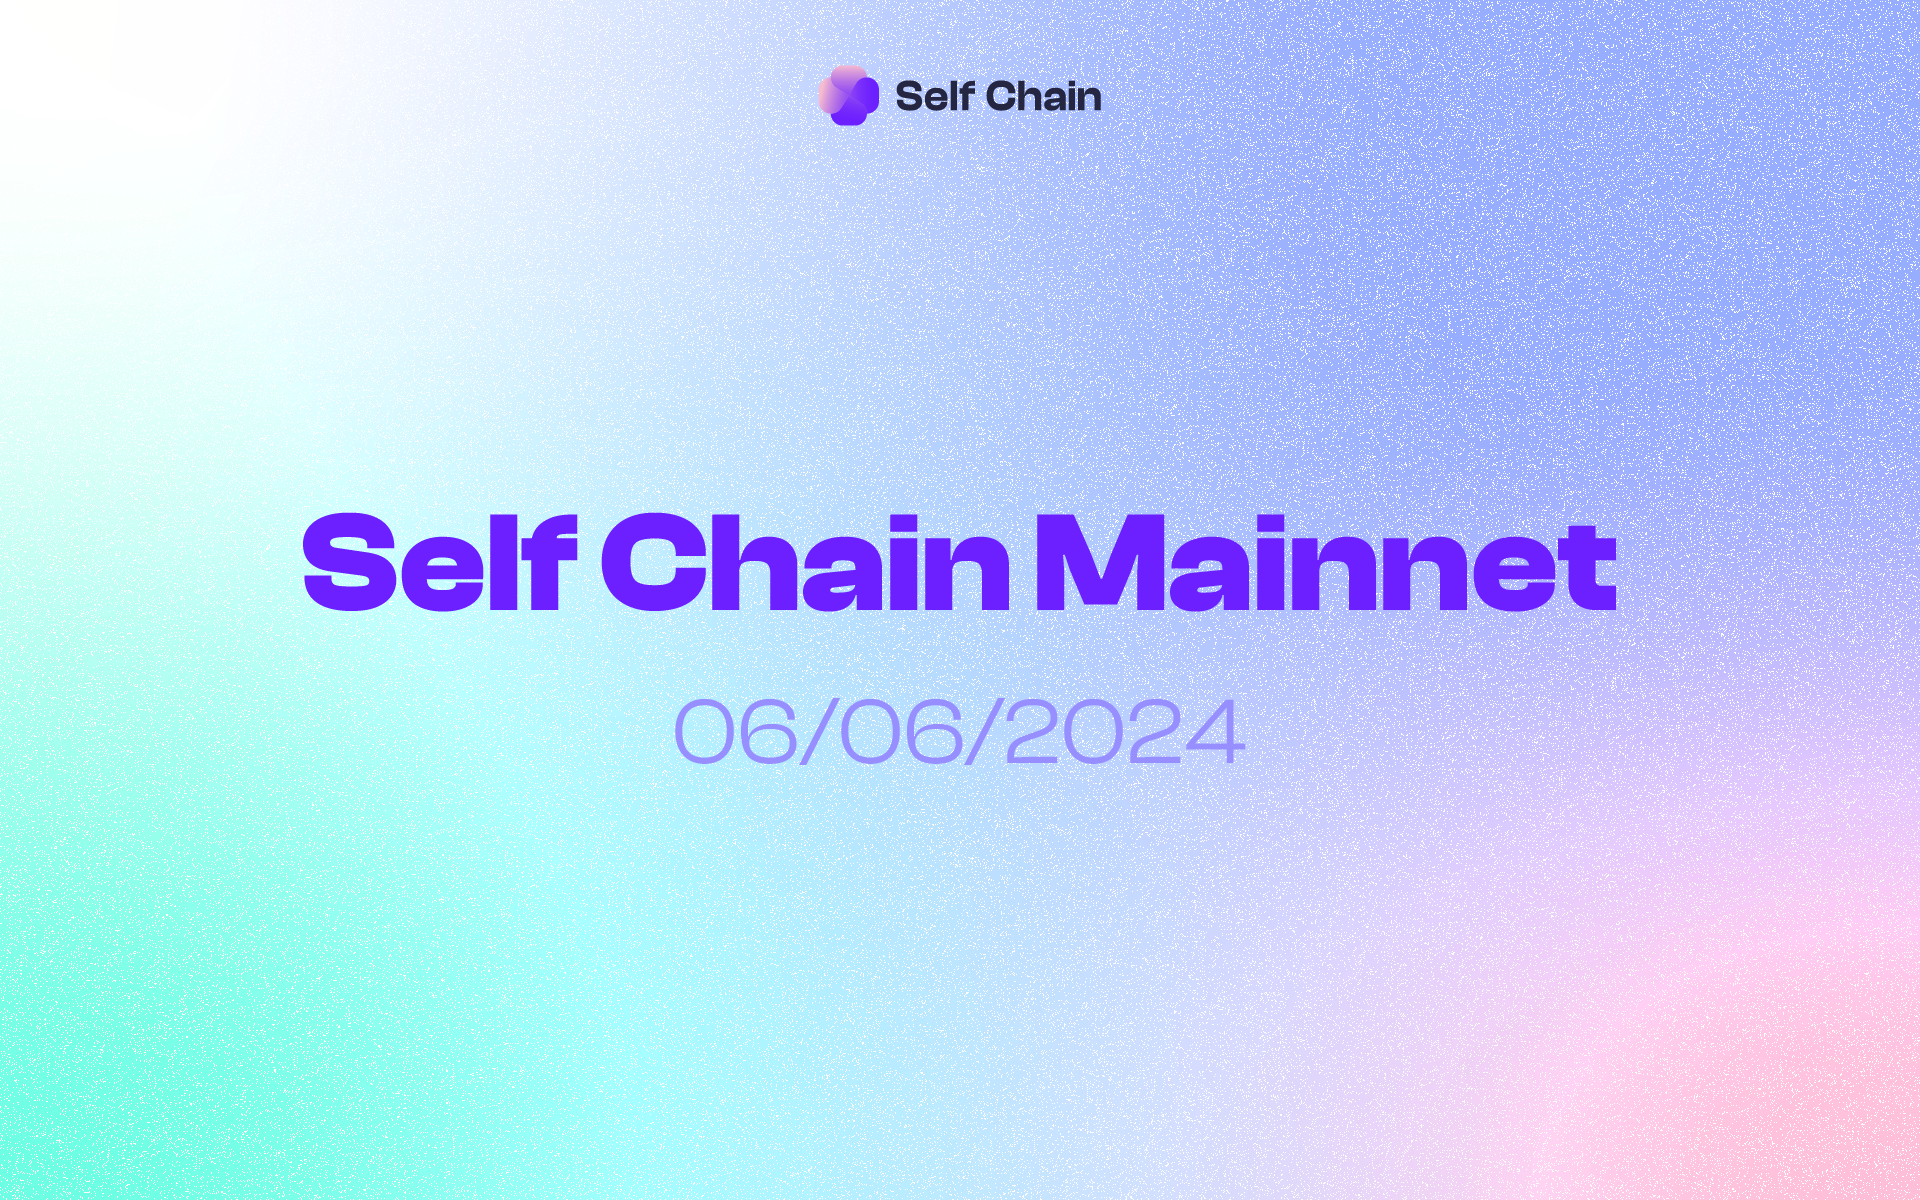 Self Chain Mainnet Launching 6/6